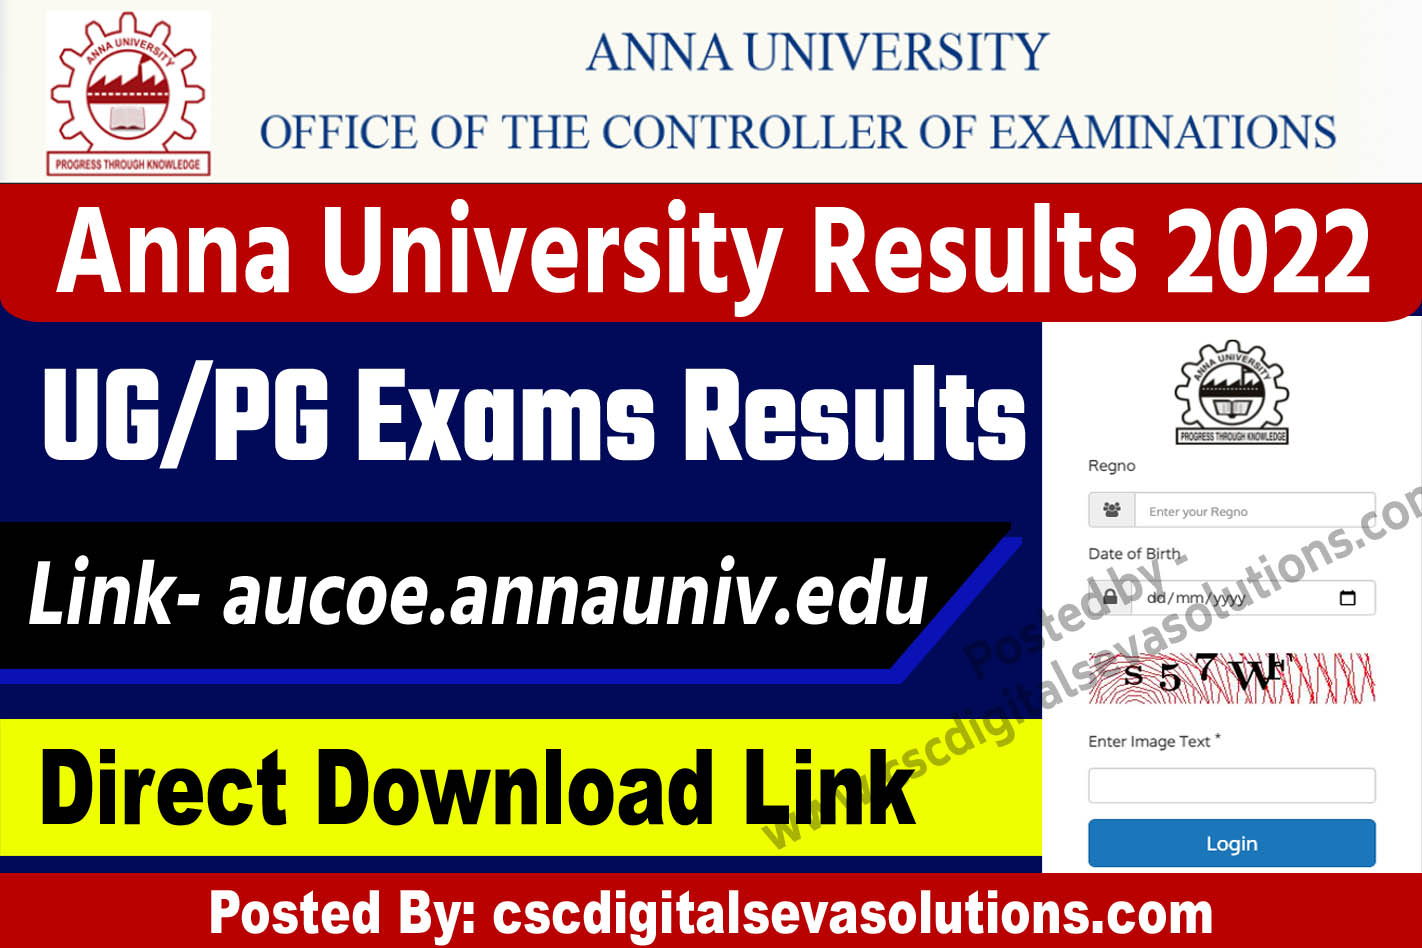 Anna University Results 2022: UG/PG Exams Marks & Grade System